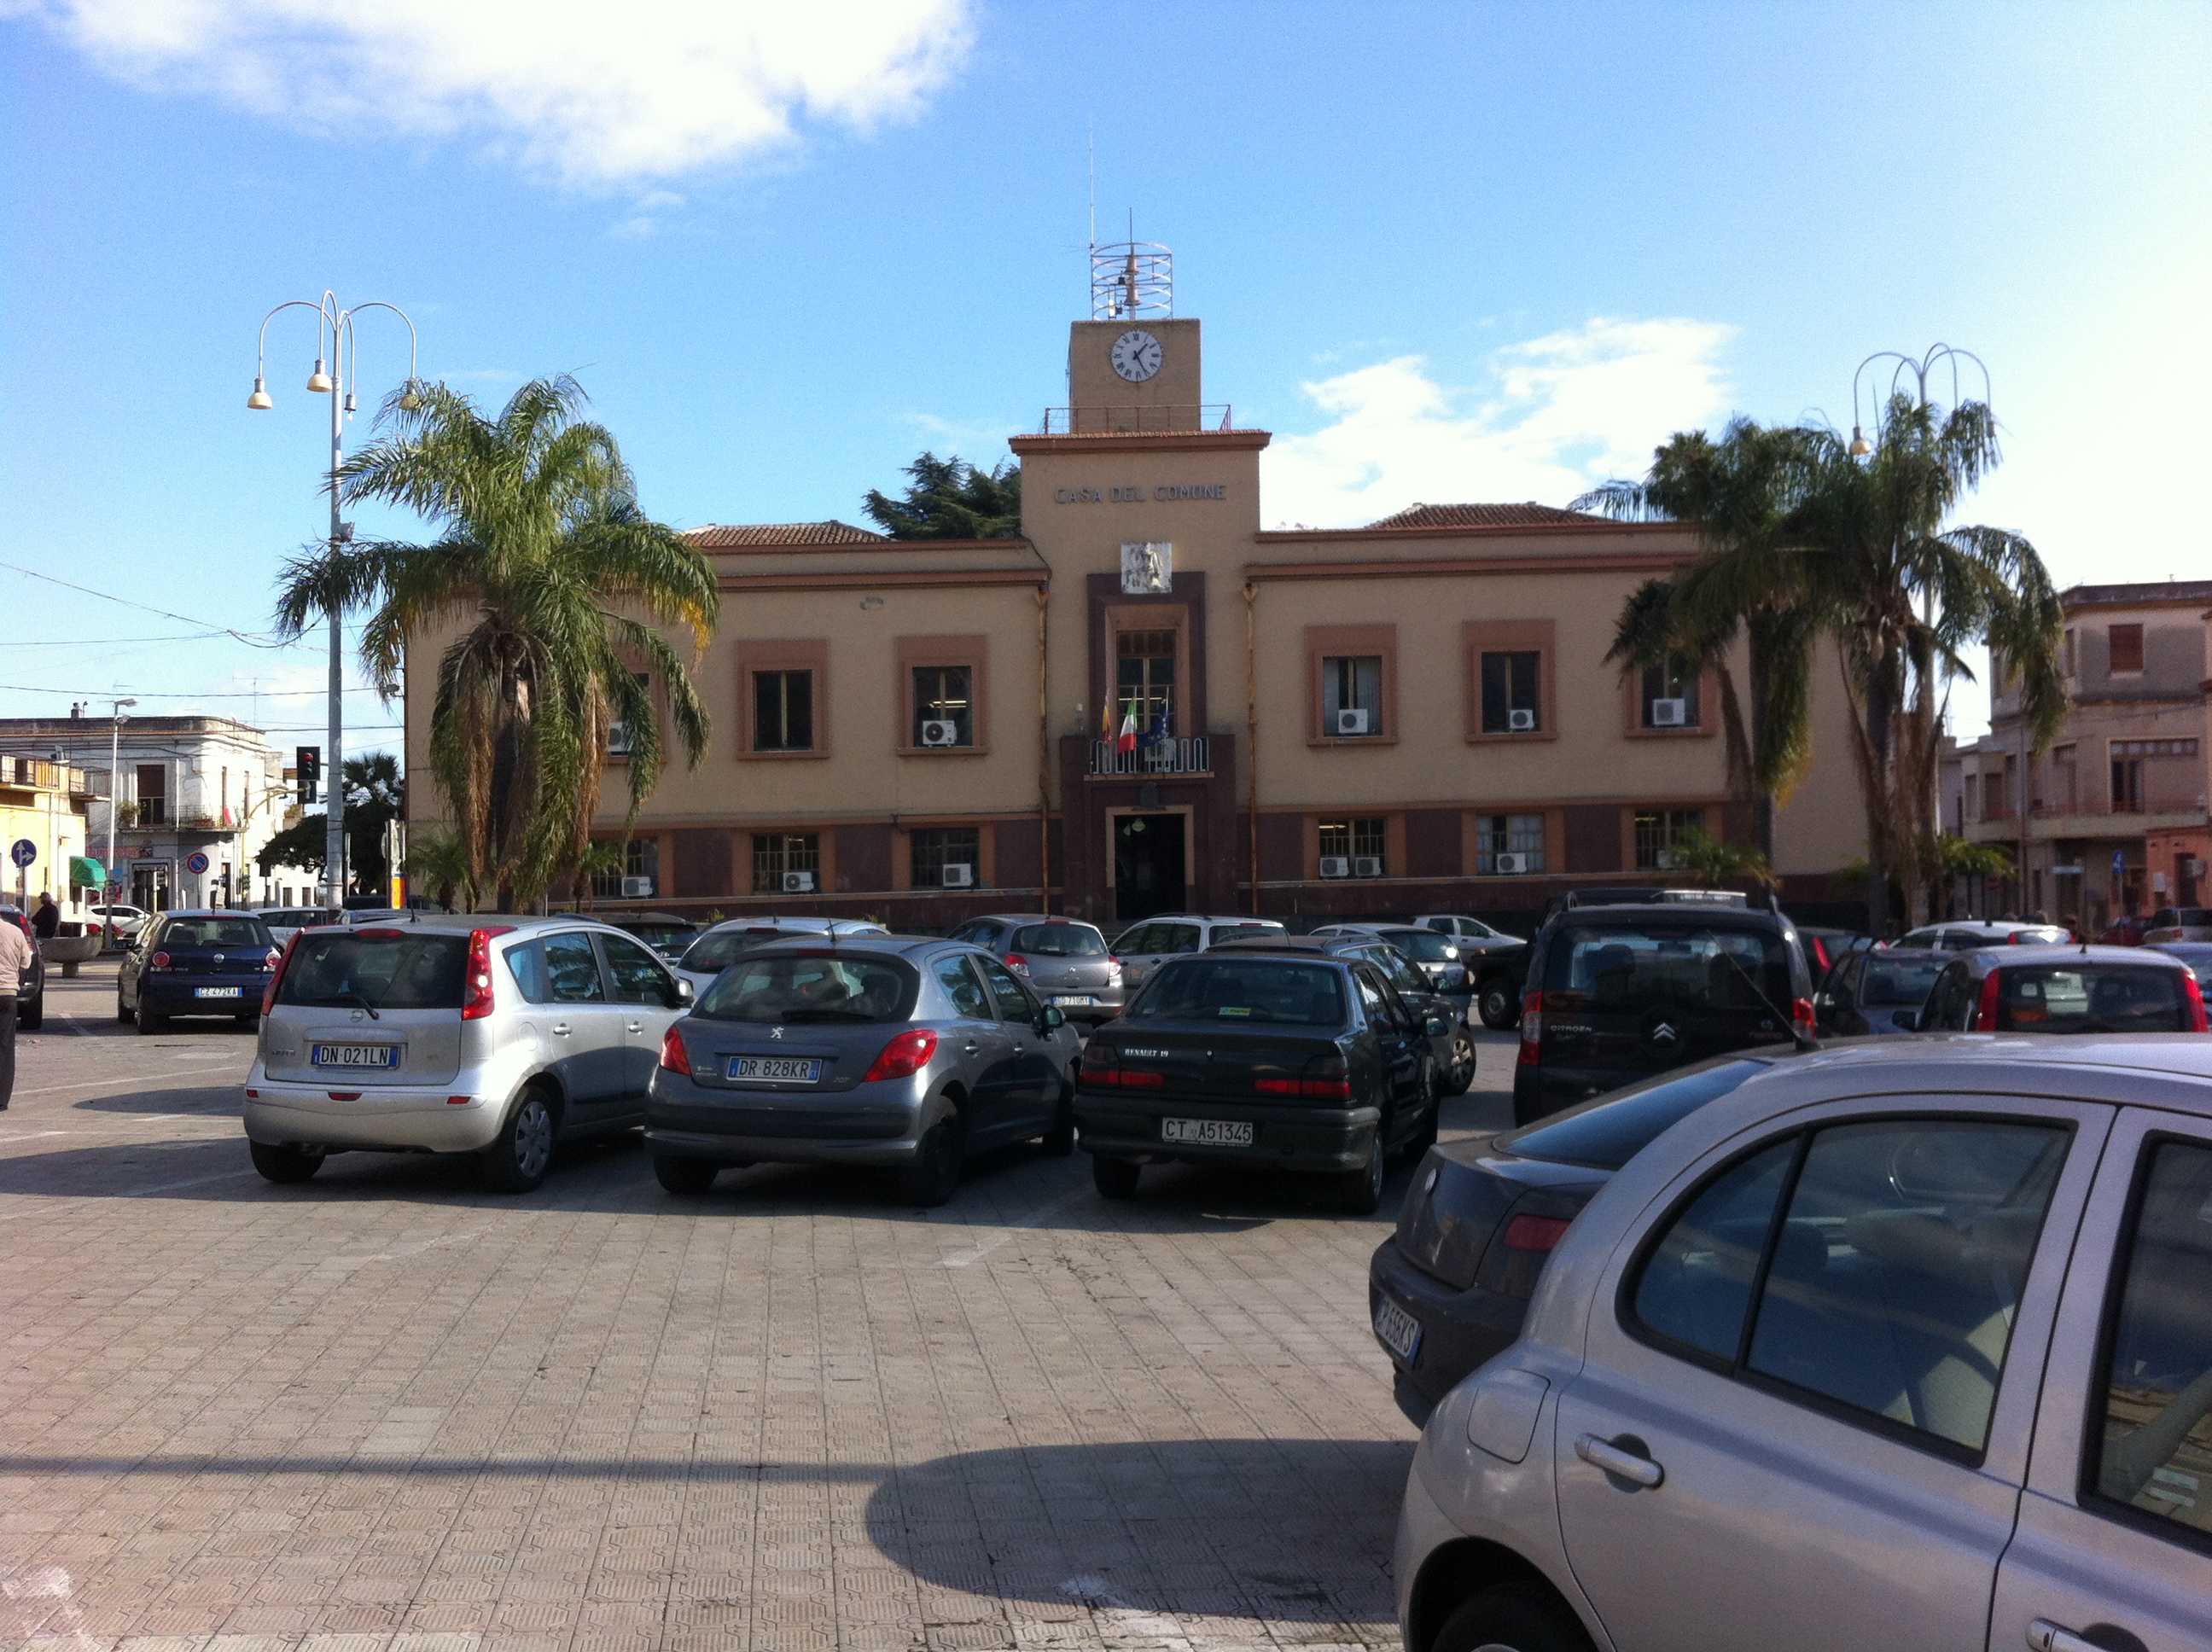 Processo Town Hall: udienza rinviata al 4 febbraio 2015. Pm favorevole ad una richiesta di patteggiamento